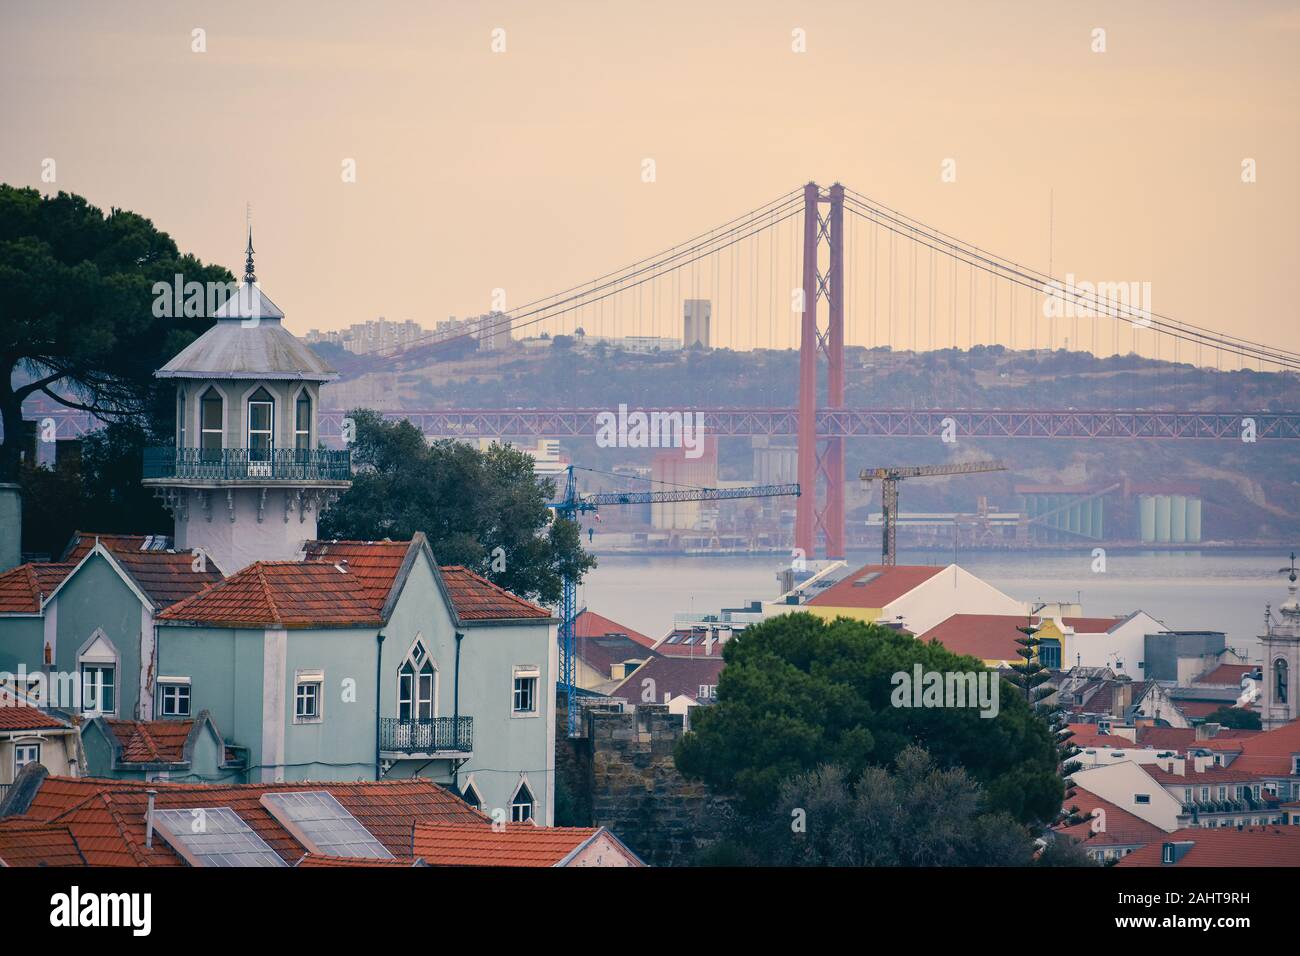 Lisbona vista panoramica. Le pareti colorate degli edifici di Lisbona, con tetti di colore arancione e il venticinquesimo del ponte di aprile in background, al tramonto. Viaggiare Foto Stock